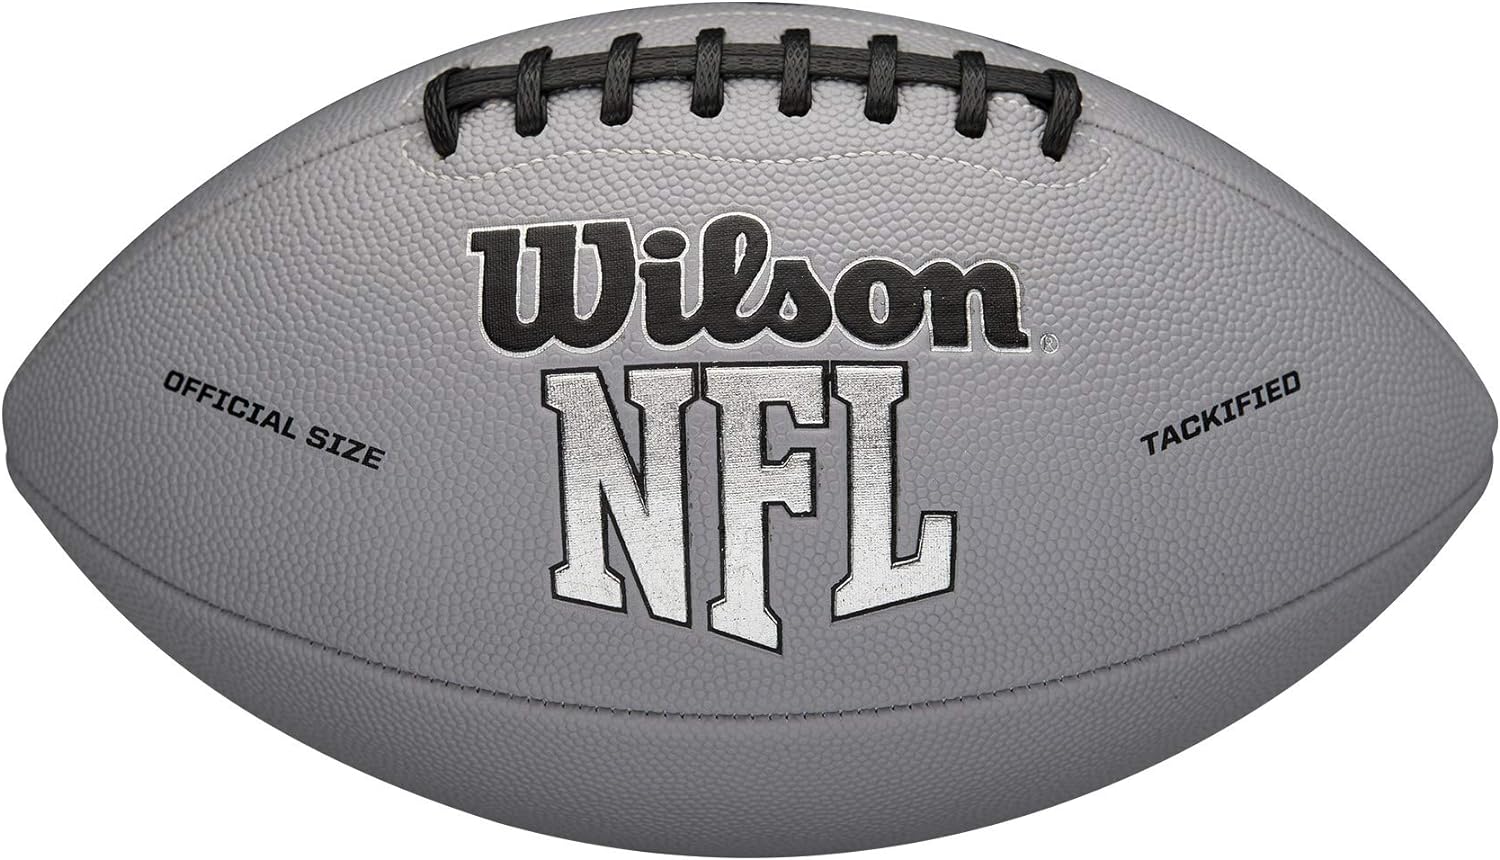 Wilson NFL MVP Football